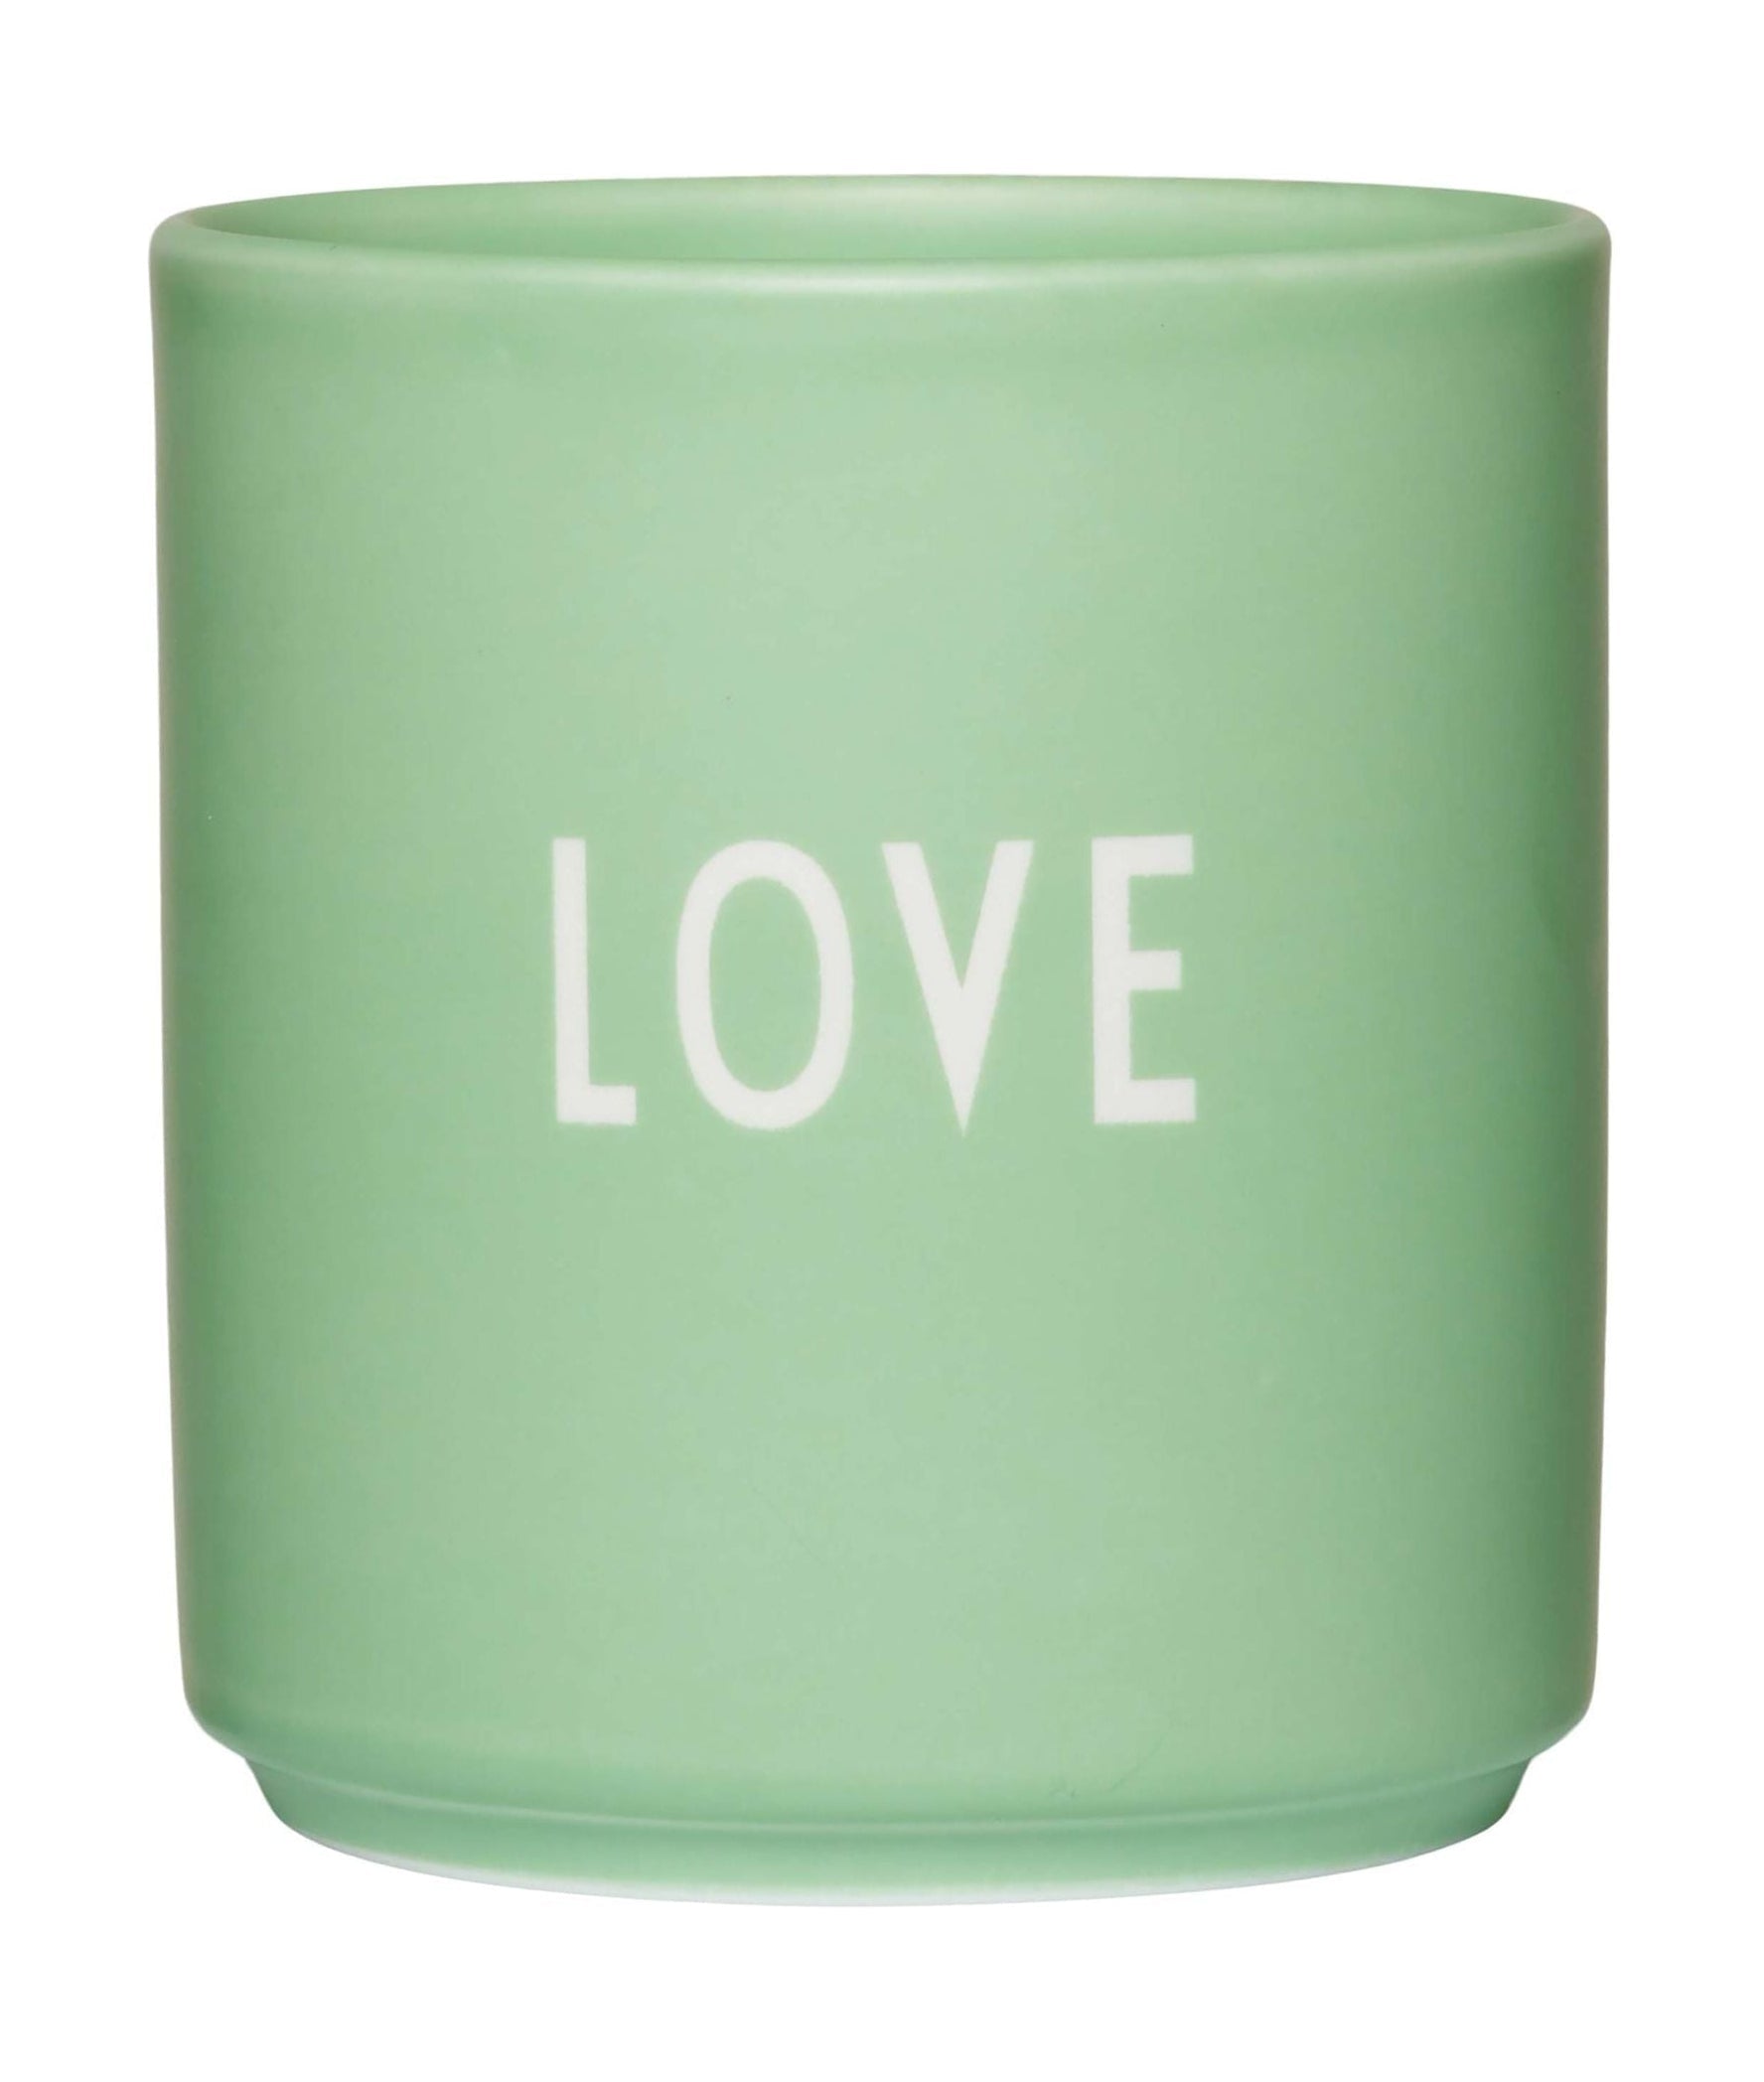 El amor de la taza favorita de la carta de diseño, verde